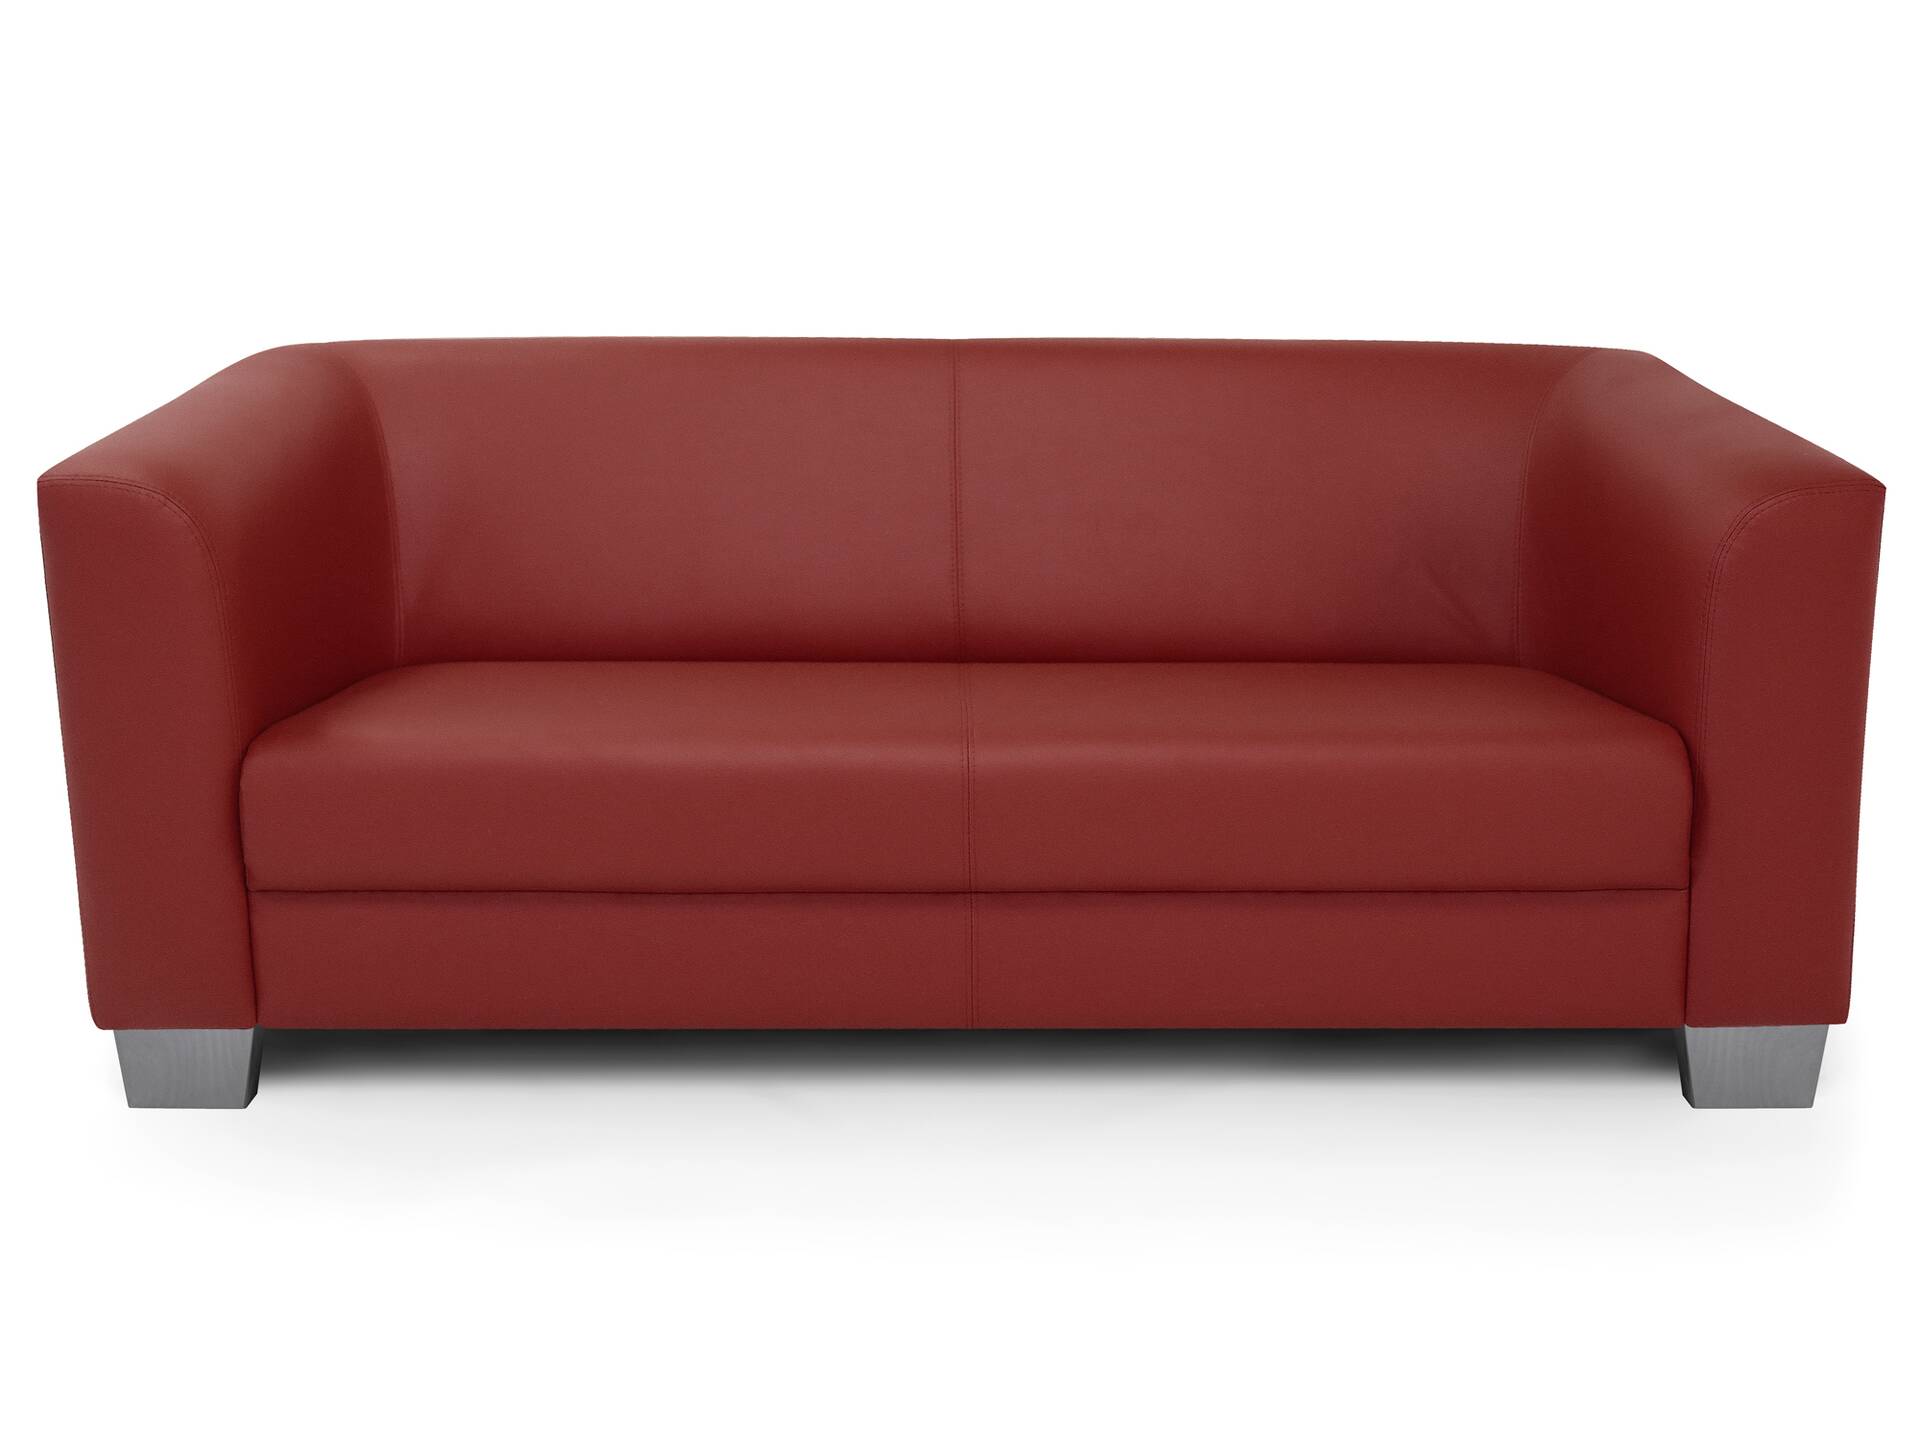 CHICAGO 3-Sitzer Sofa, Material Kunstleder weinrot